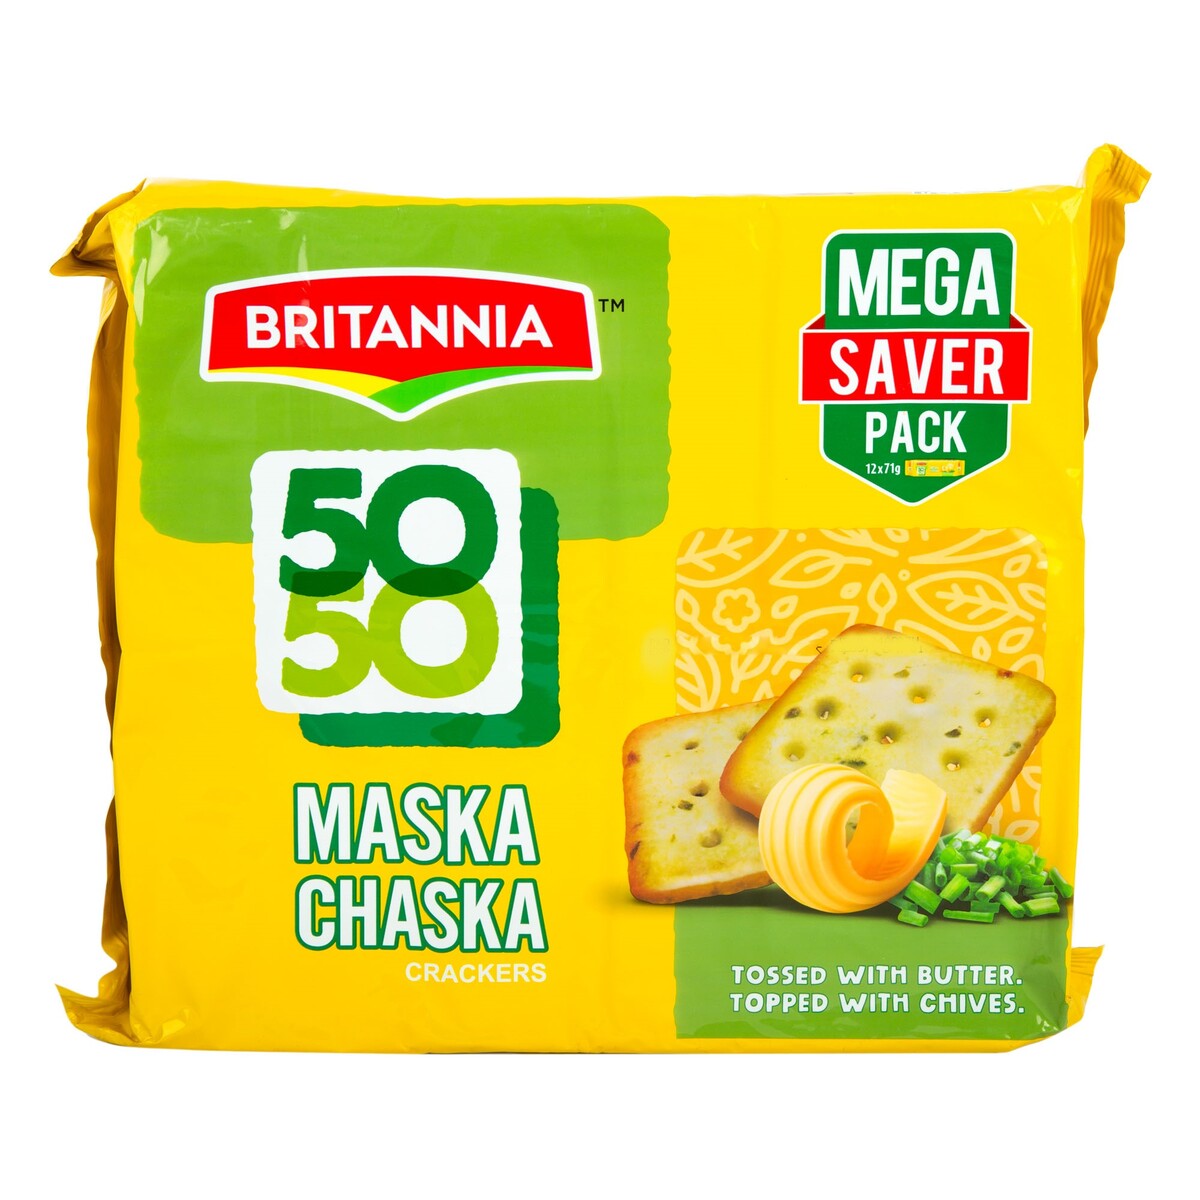 Britannia 50-50 Maska Chaska Crackers 71 g 8+4